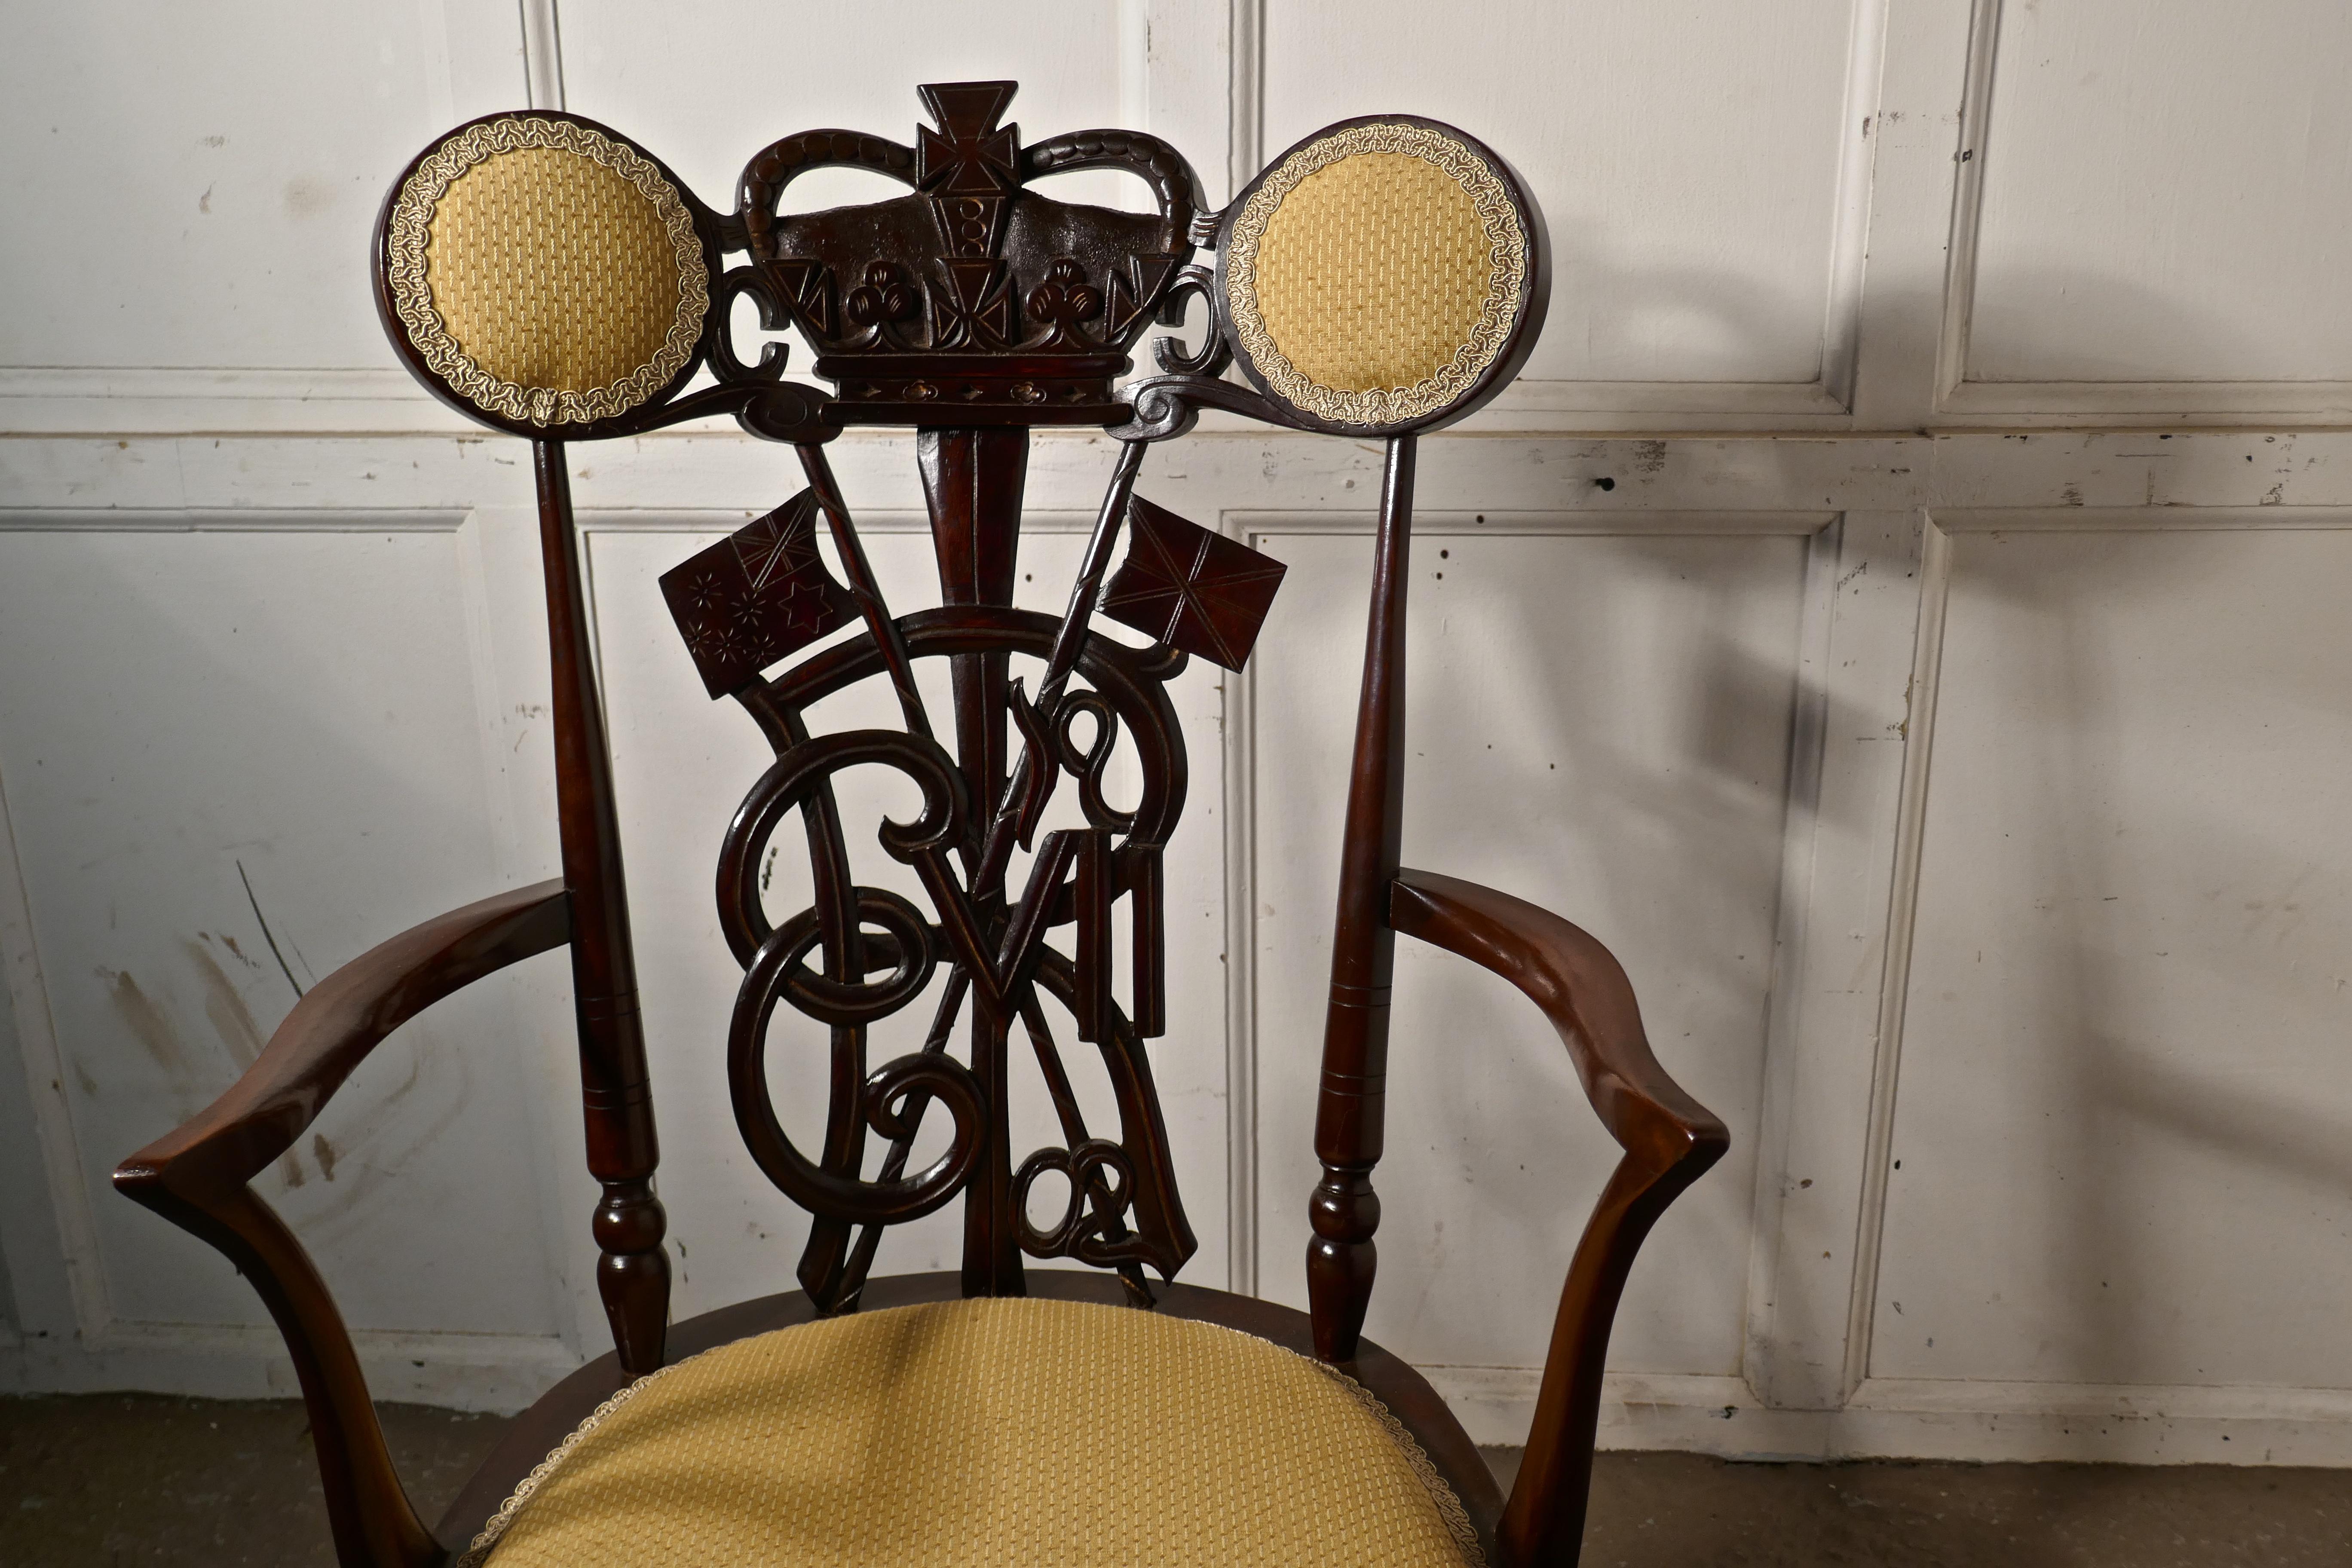 chaise du trône du couronnement Edward VII de 1902 en acajou


Il s'agit d'une pièce superbement réalisée, fabriquée pour célébrer le couronnement d'Édouard VII en 1902
La chaise est de style édouardien très typique avec un dossier sculpté